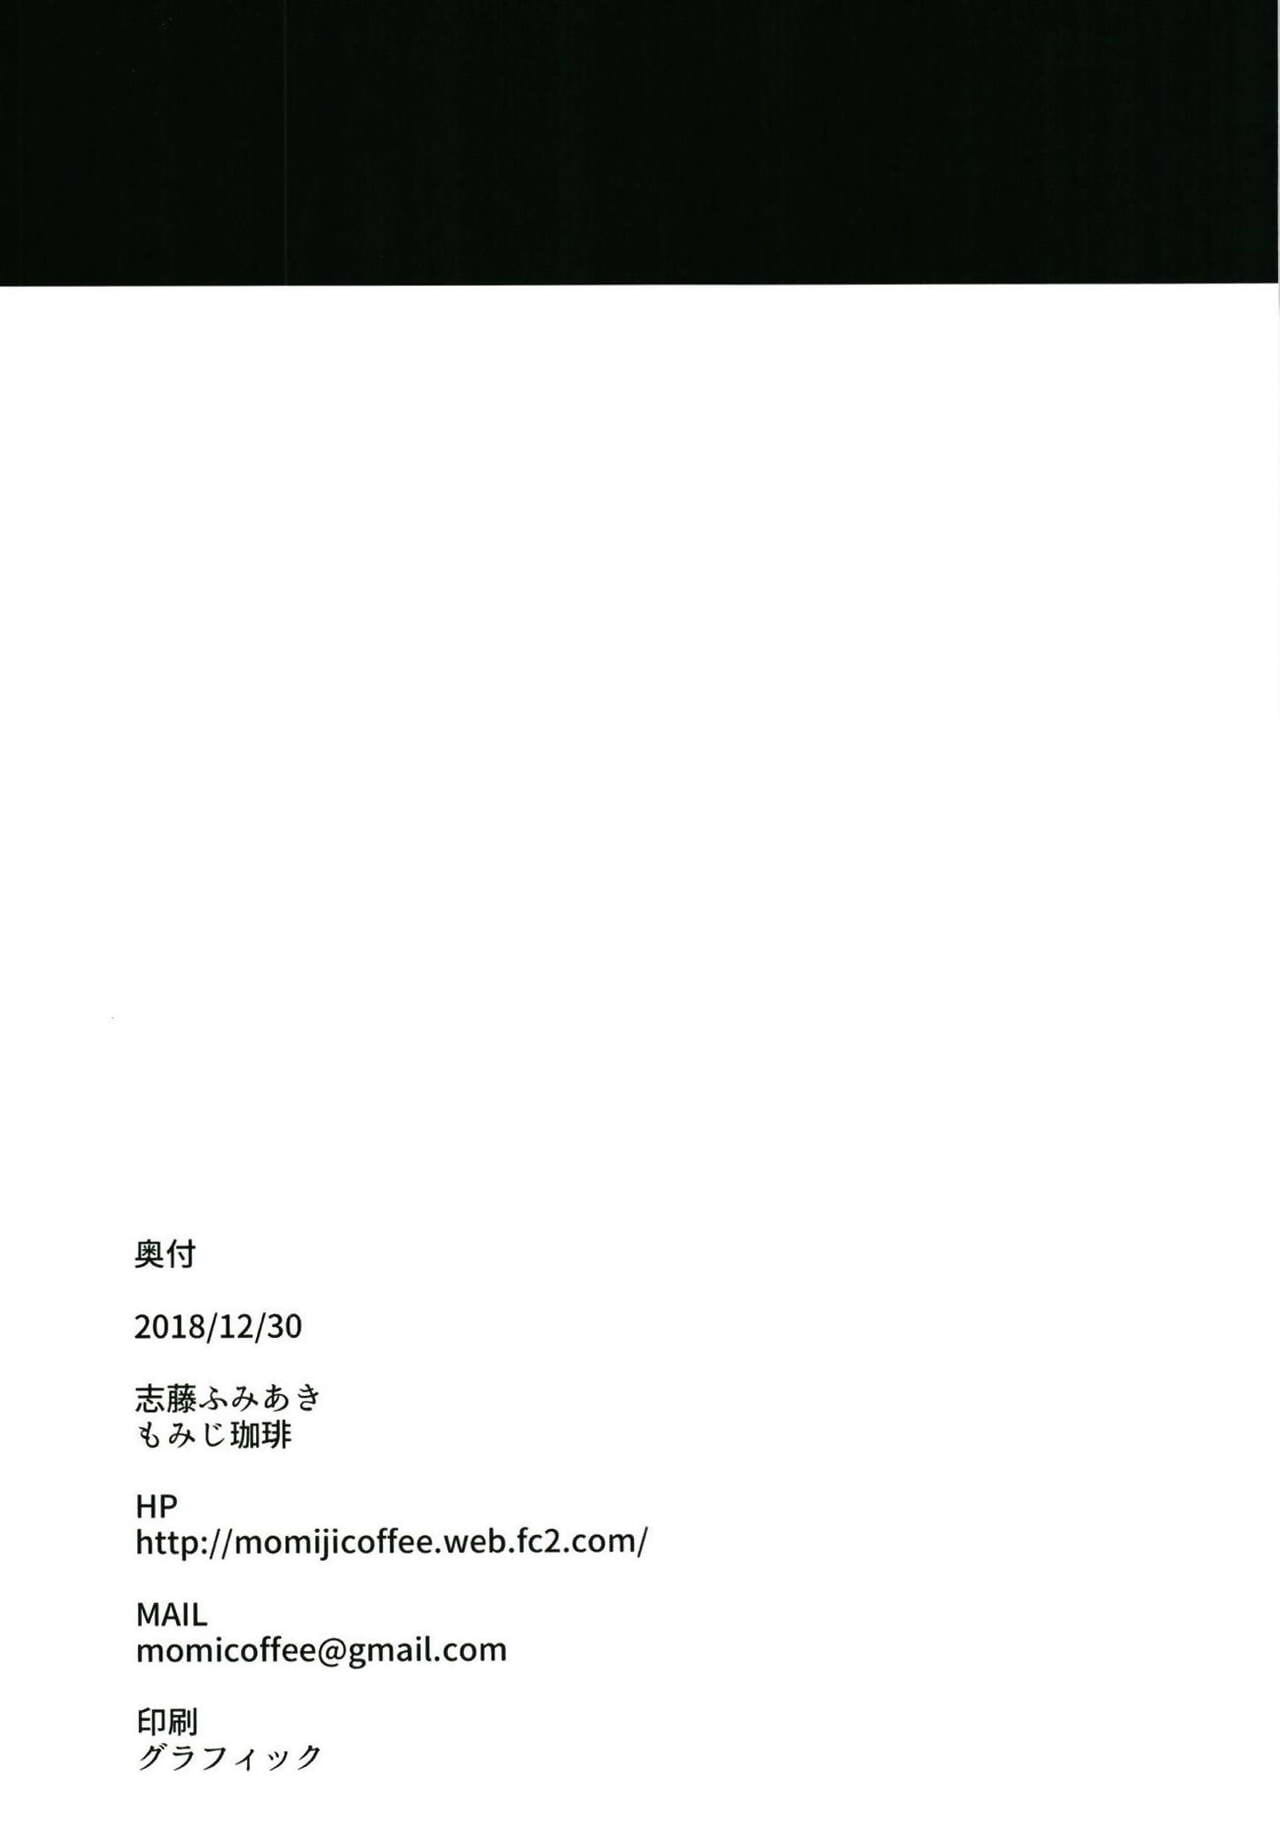 yukata suzuya O  suru Hon page 1